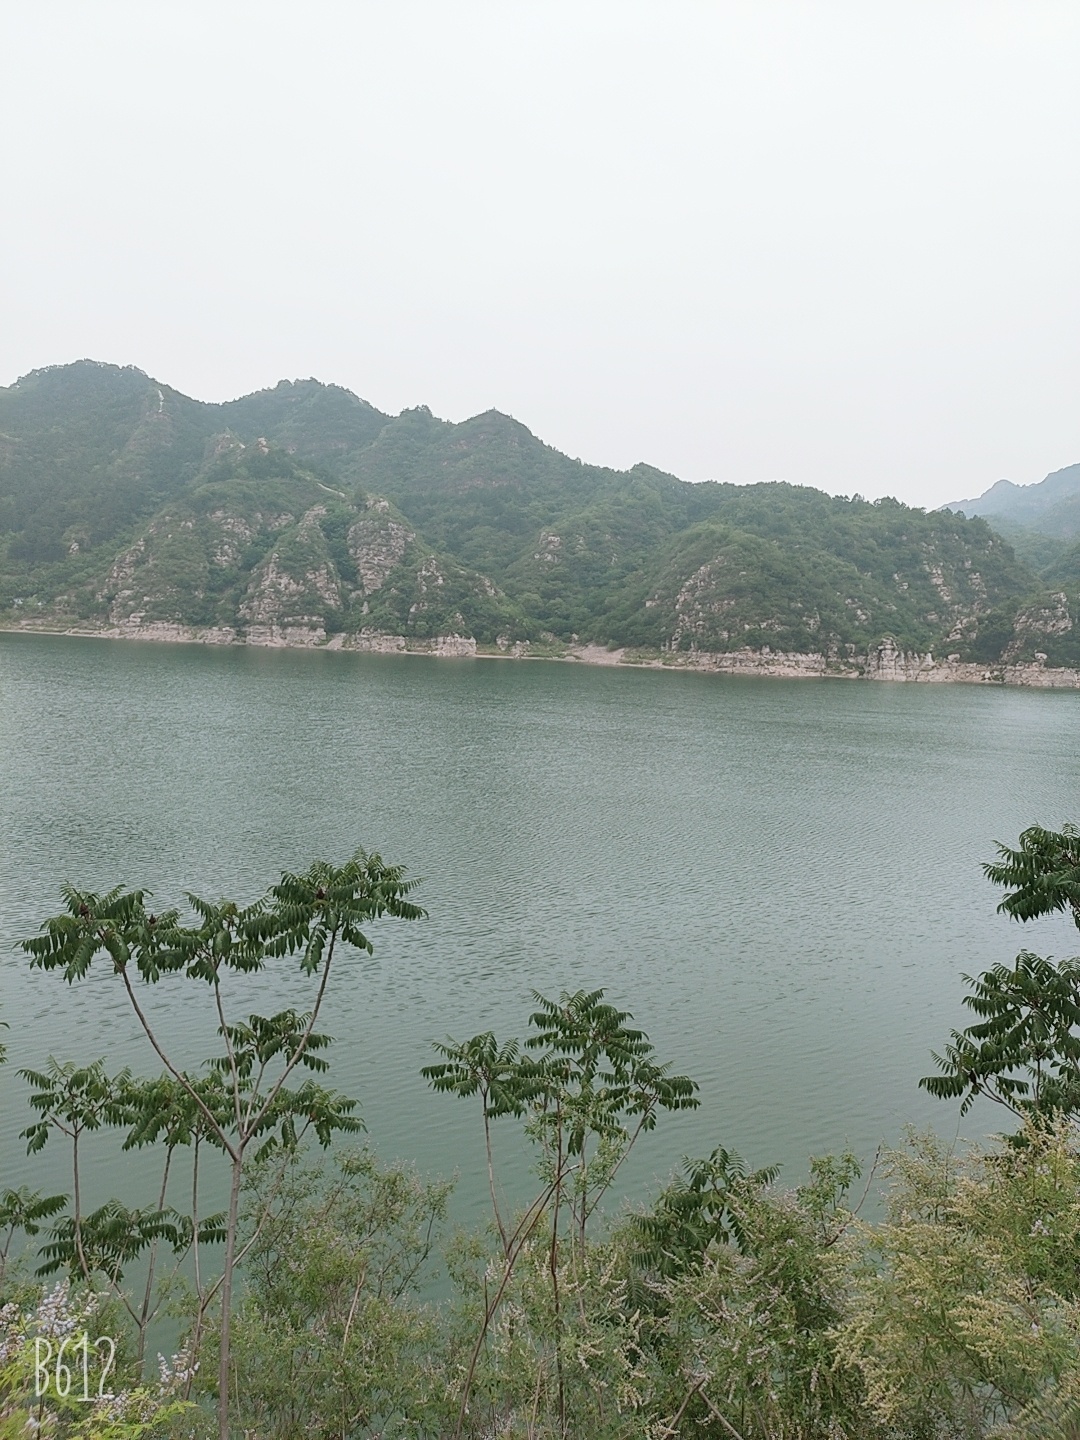 自驾游开车一个半小时北京到平谷外京东大峡谷